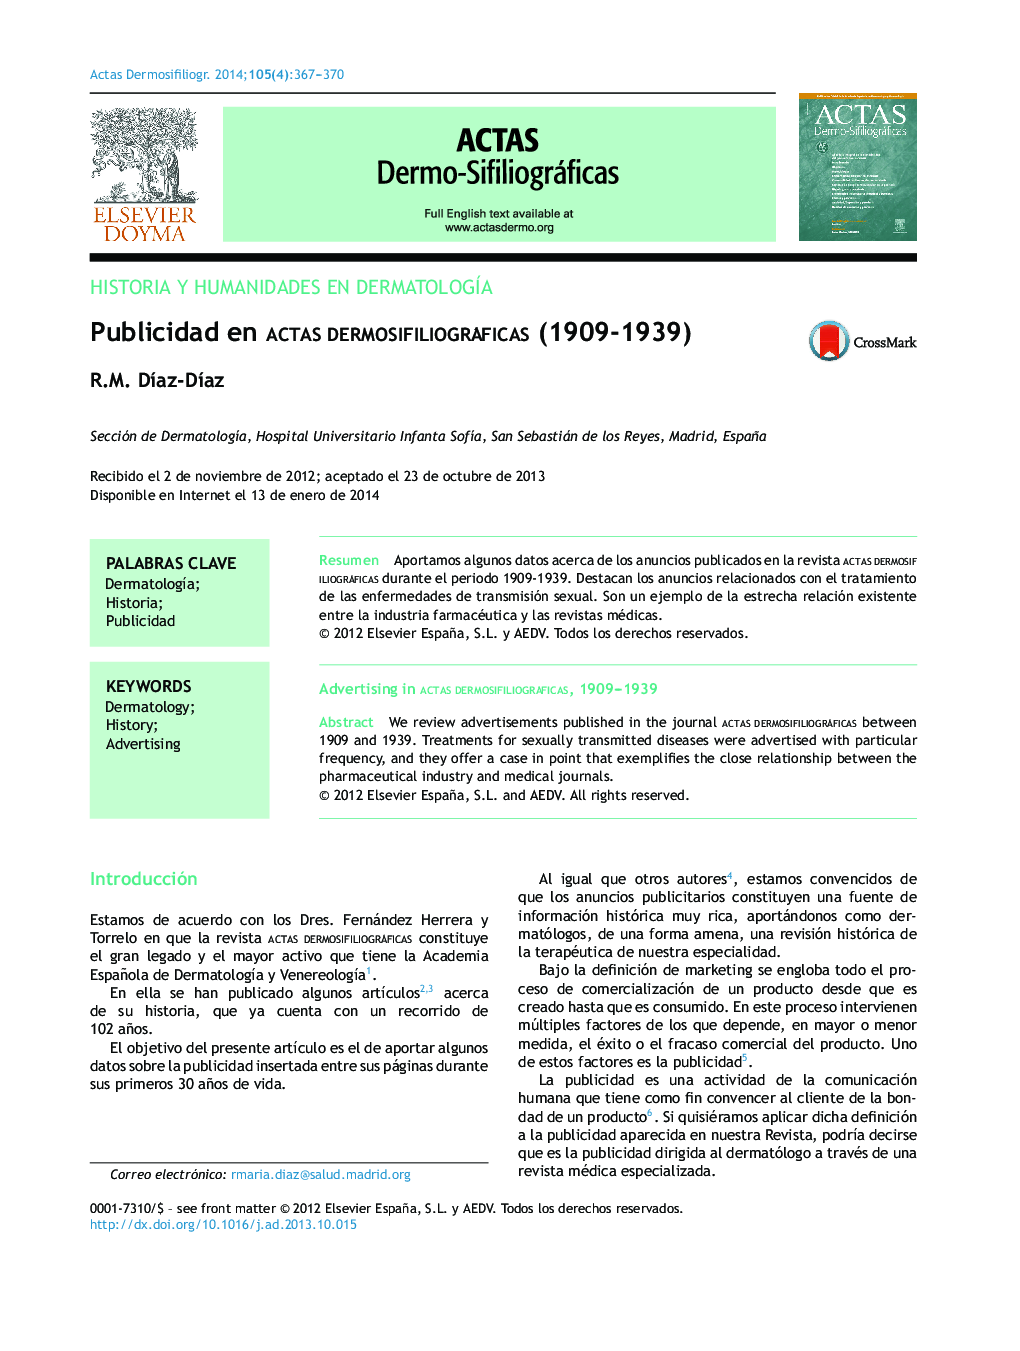 Publicidad en Actas Dermosifiliográficas (1909-1939)